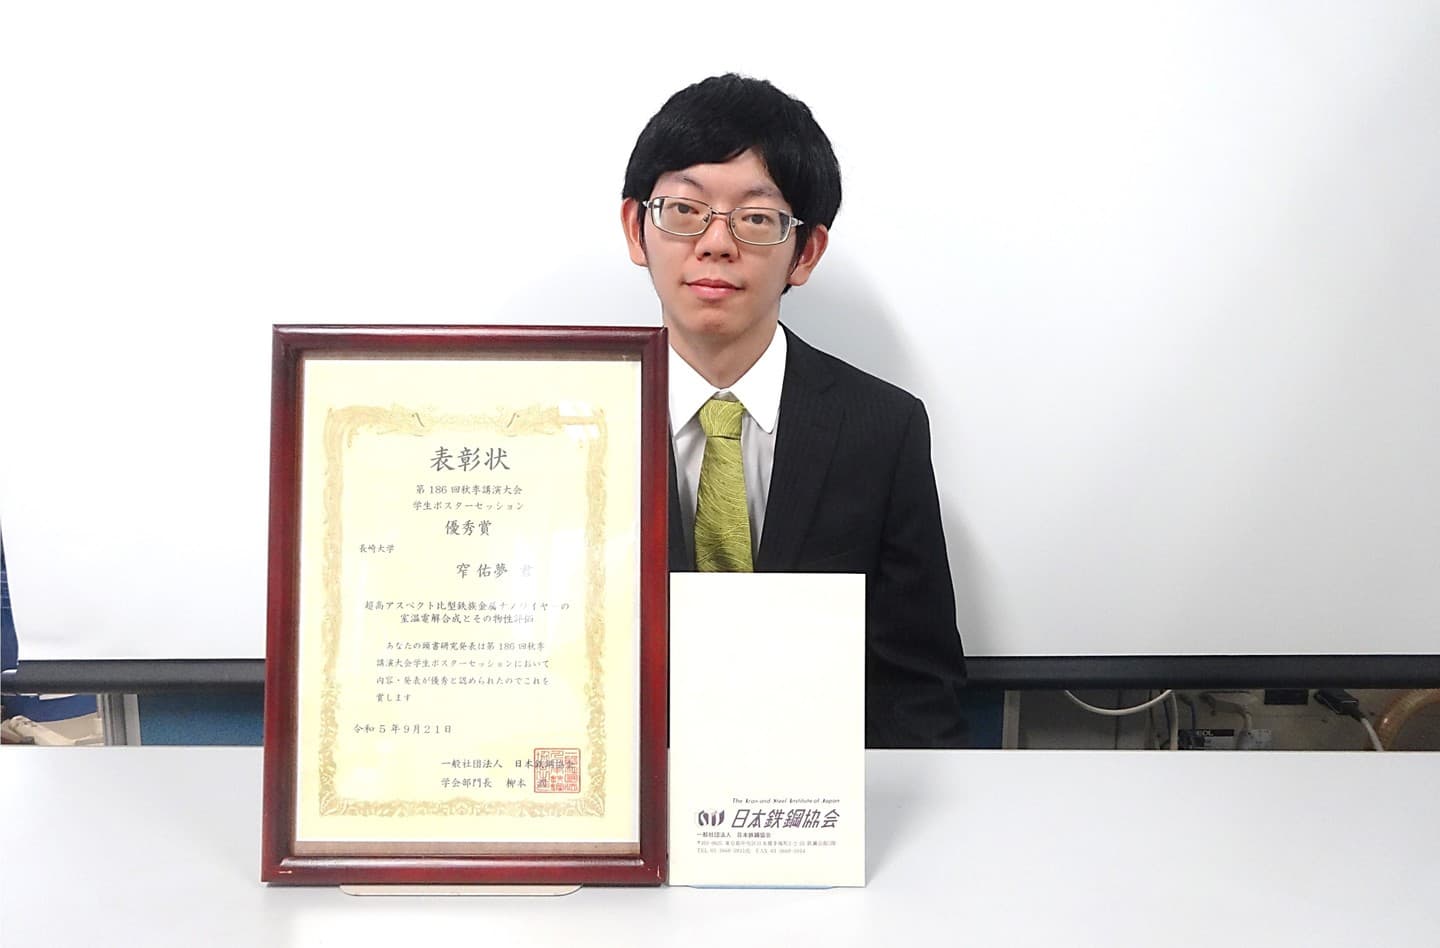 窄佑夢さん（M2）が、日本鉄鋼協会第186回秋季講演大会学生ポスターセッションにおいて優秀賞を受賞しました。2023/09/21